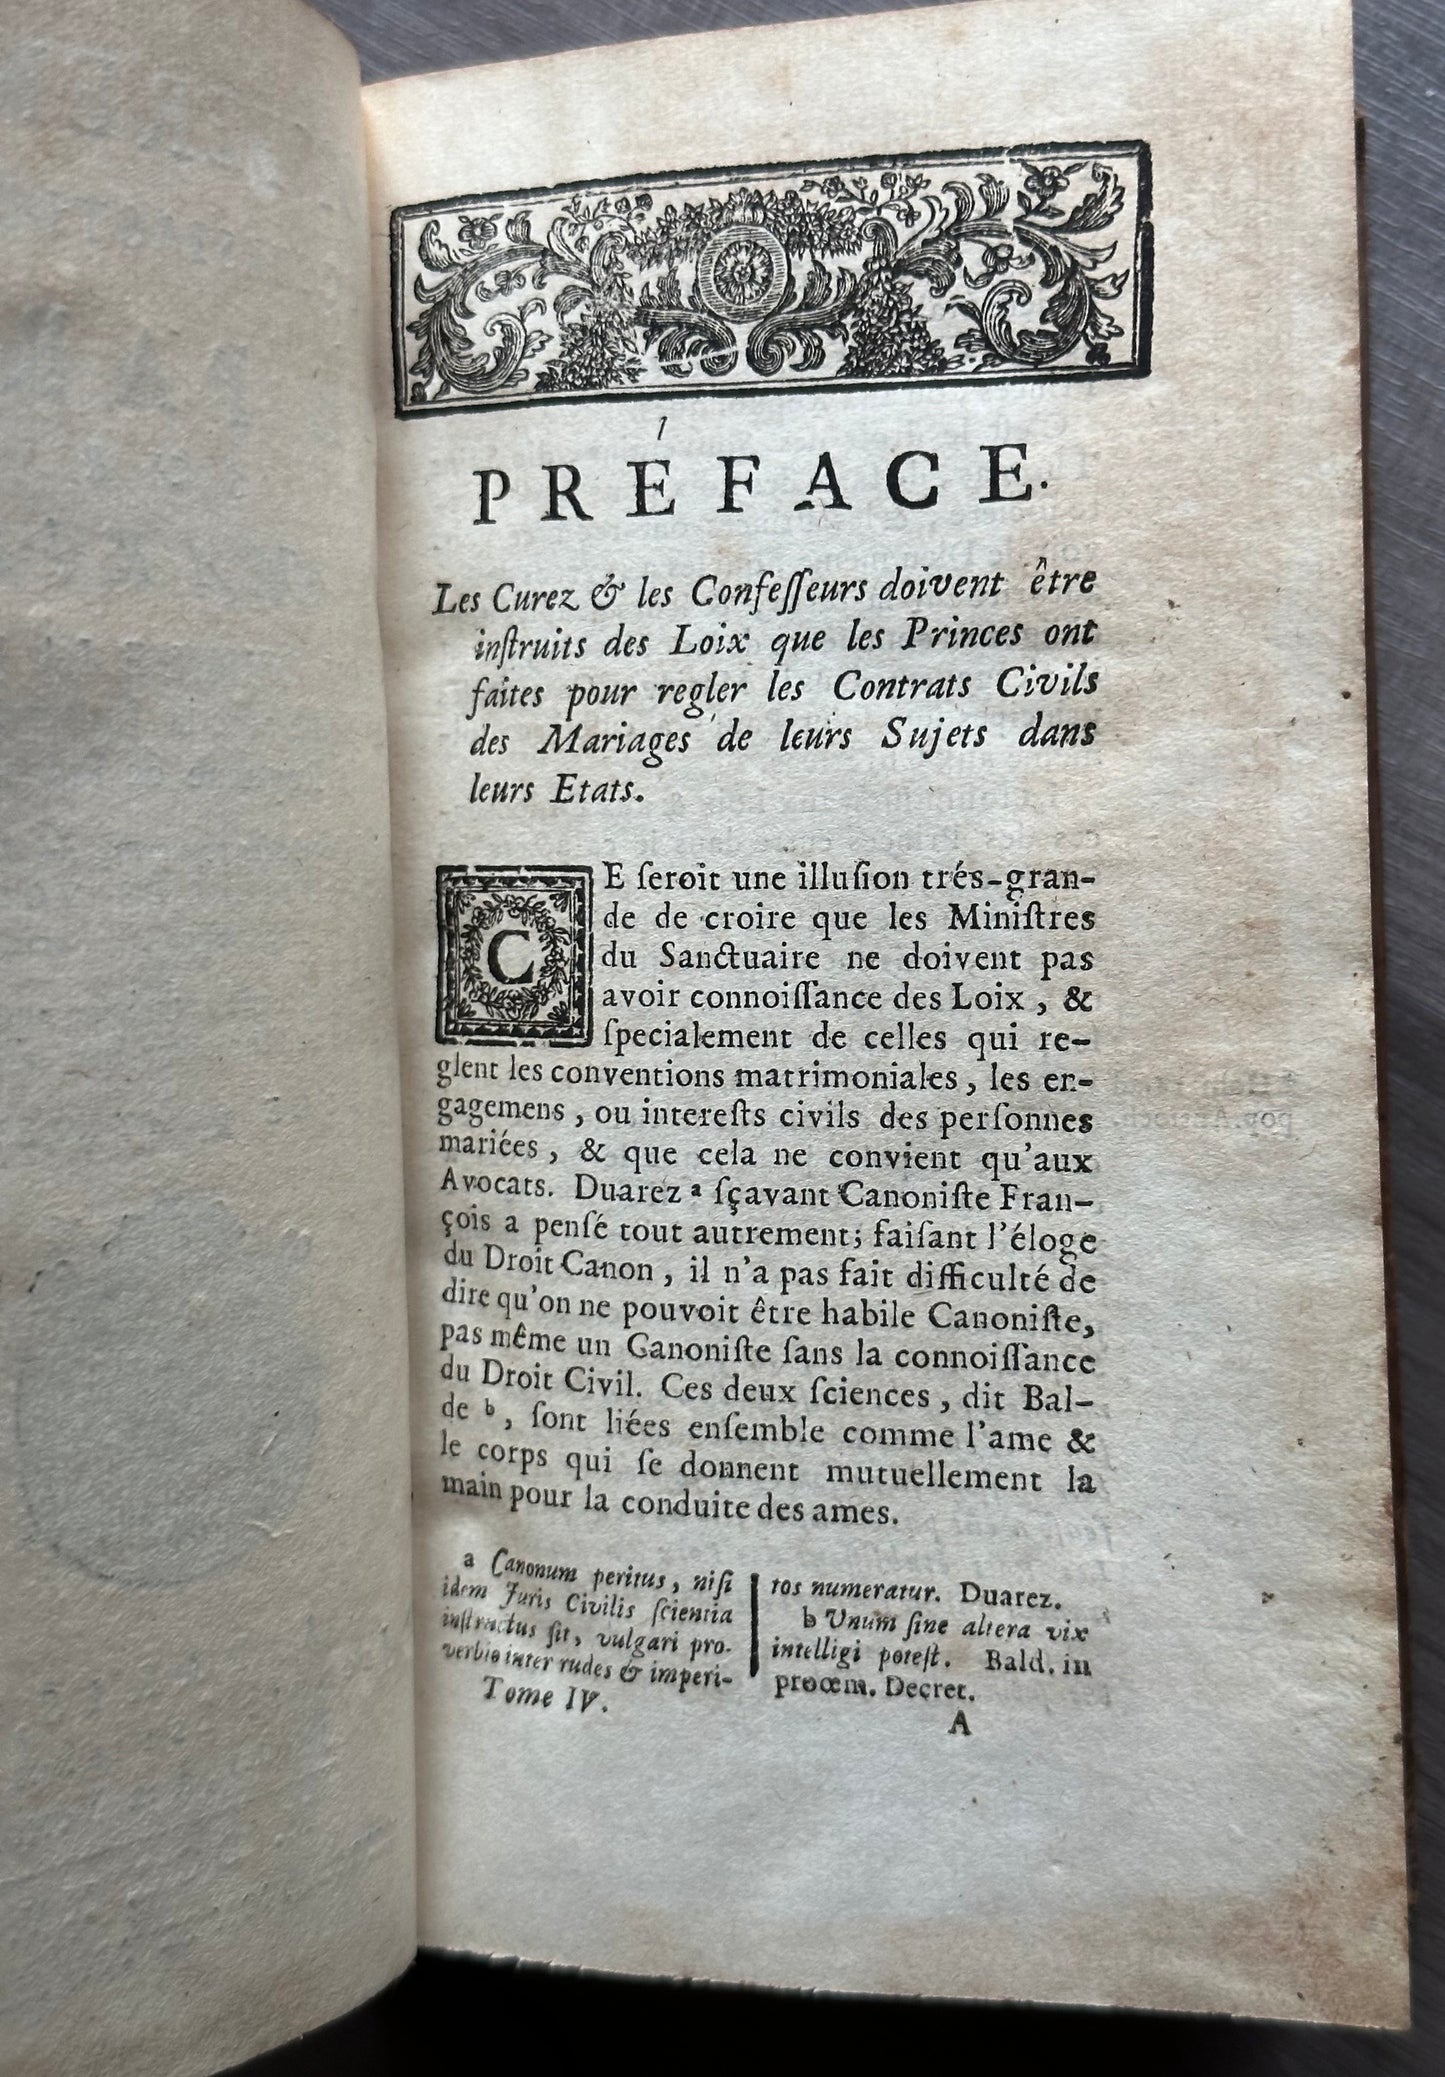 1715 Ecclesiastical Conference of Paris